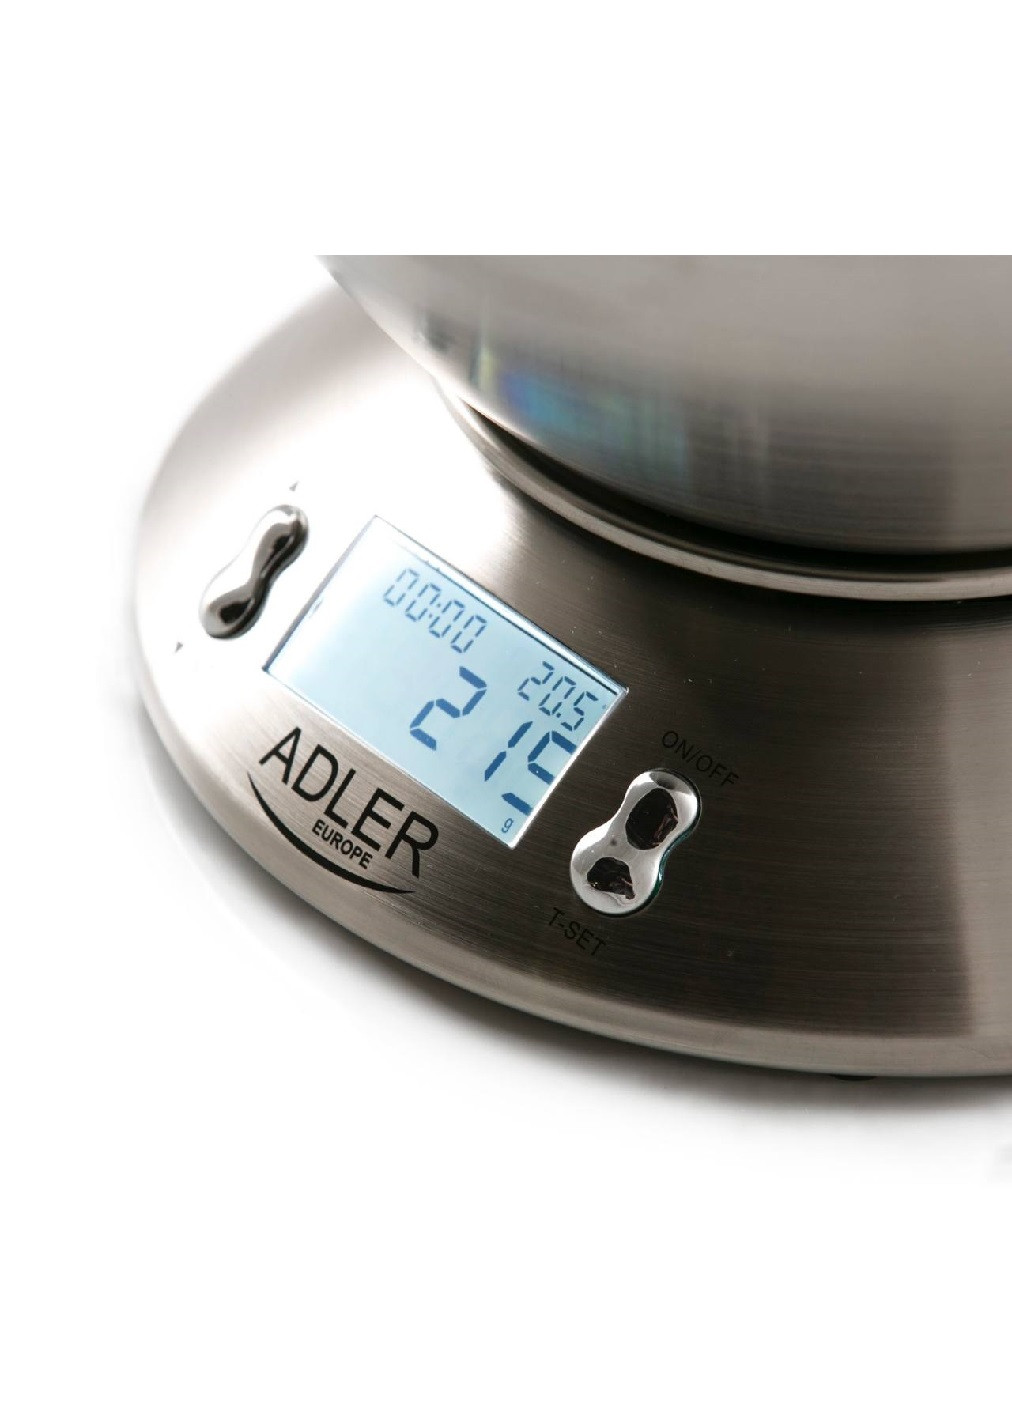 Весы кухонные электронные металлические с дисплеем индикатором термометром компактные с чашей до 5 кг (474530-Prob) Unbranded (258678438)